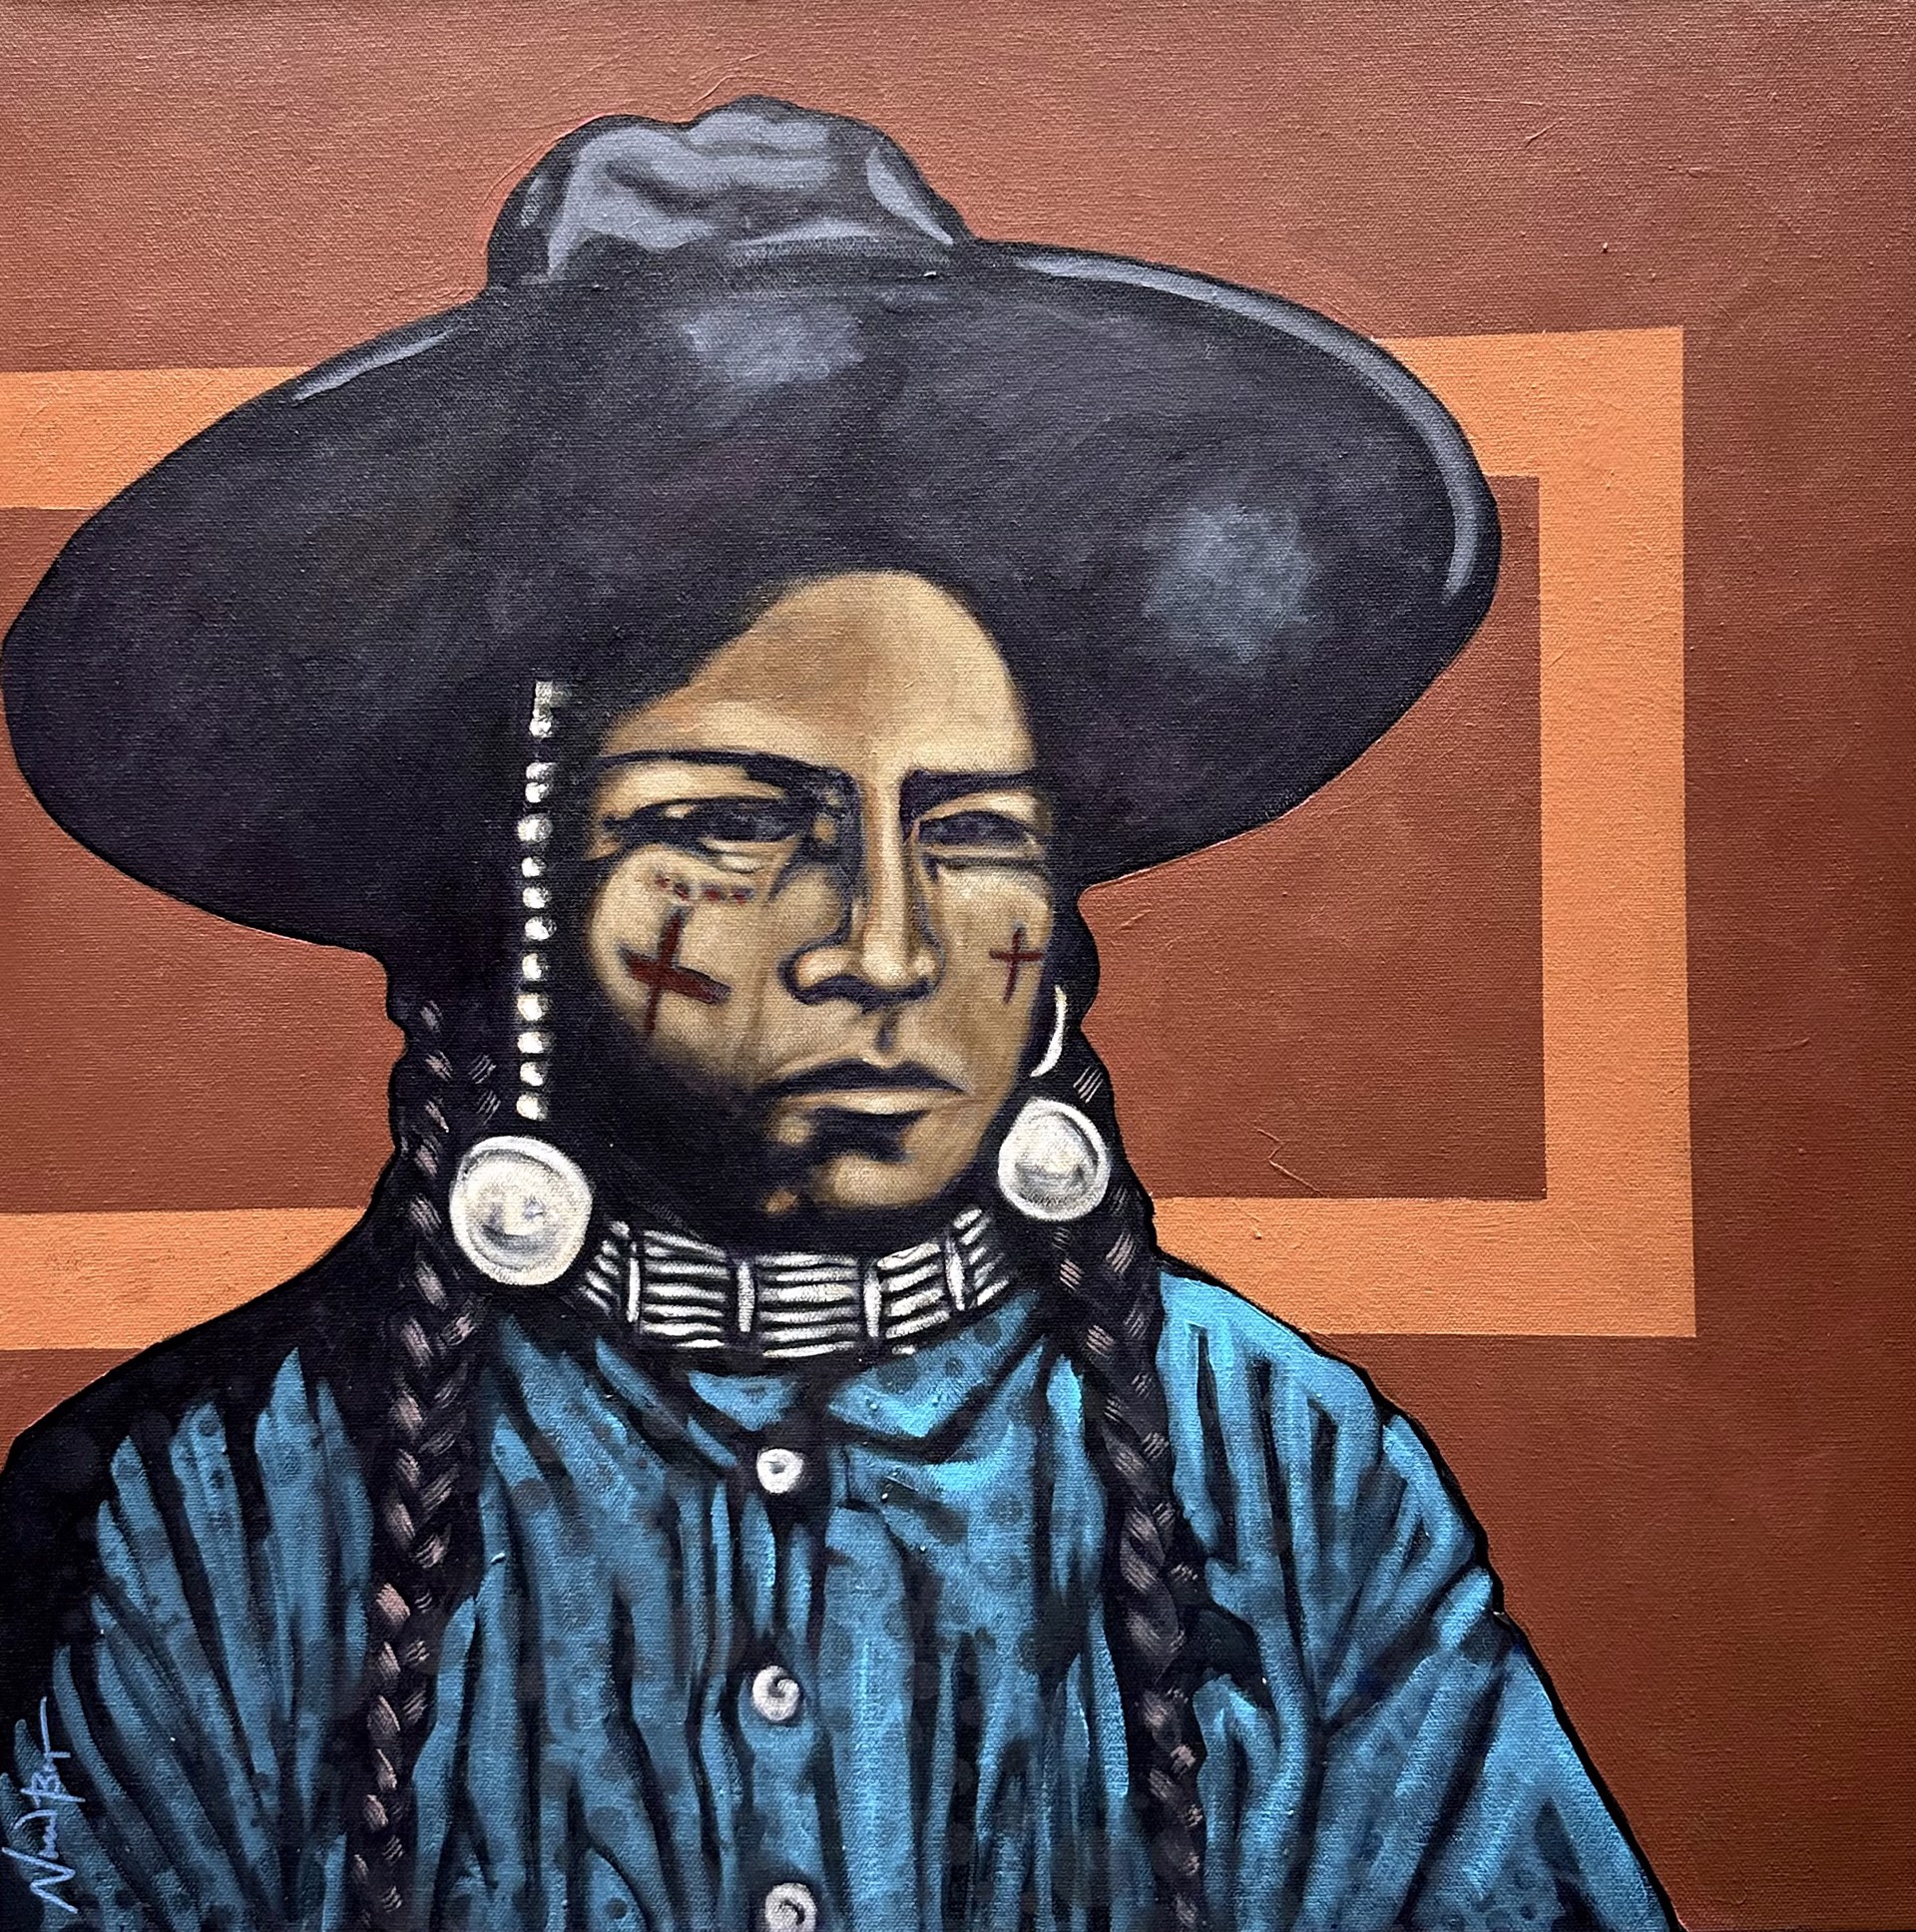 Wasco Cowboy by Nocona Burgess